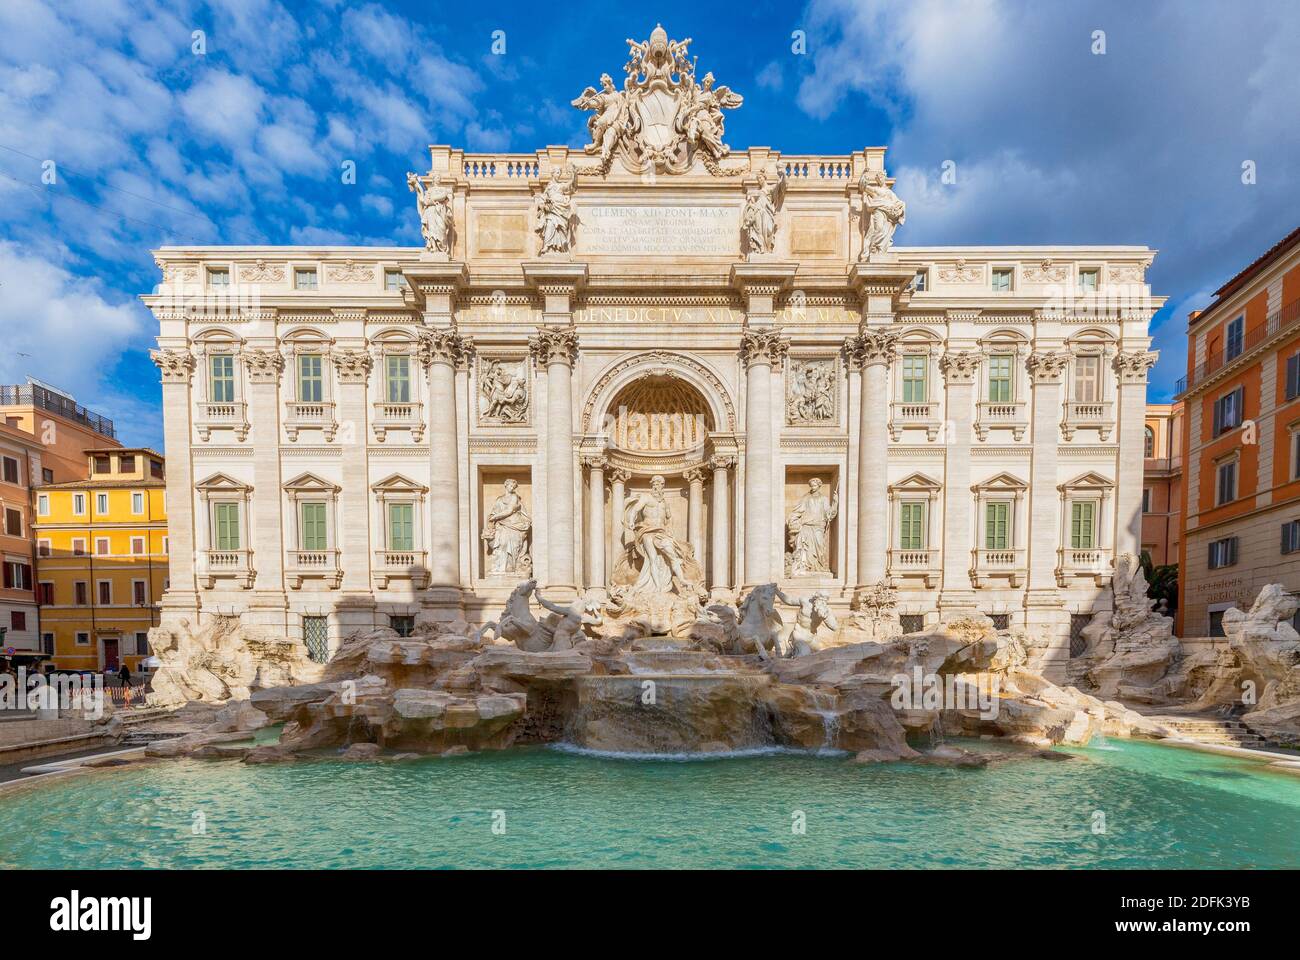 La fontaine de Trevi est la plus grande et l'une des plus célèbres fontaines à Rome et parmi les plus célèbres fontaines dans le monde. Banque D'Images